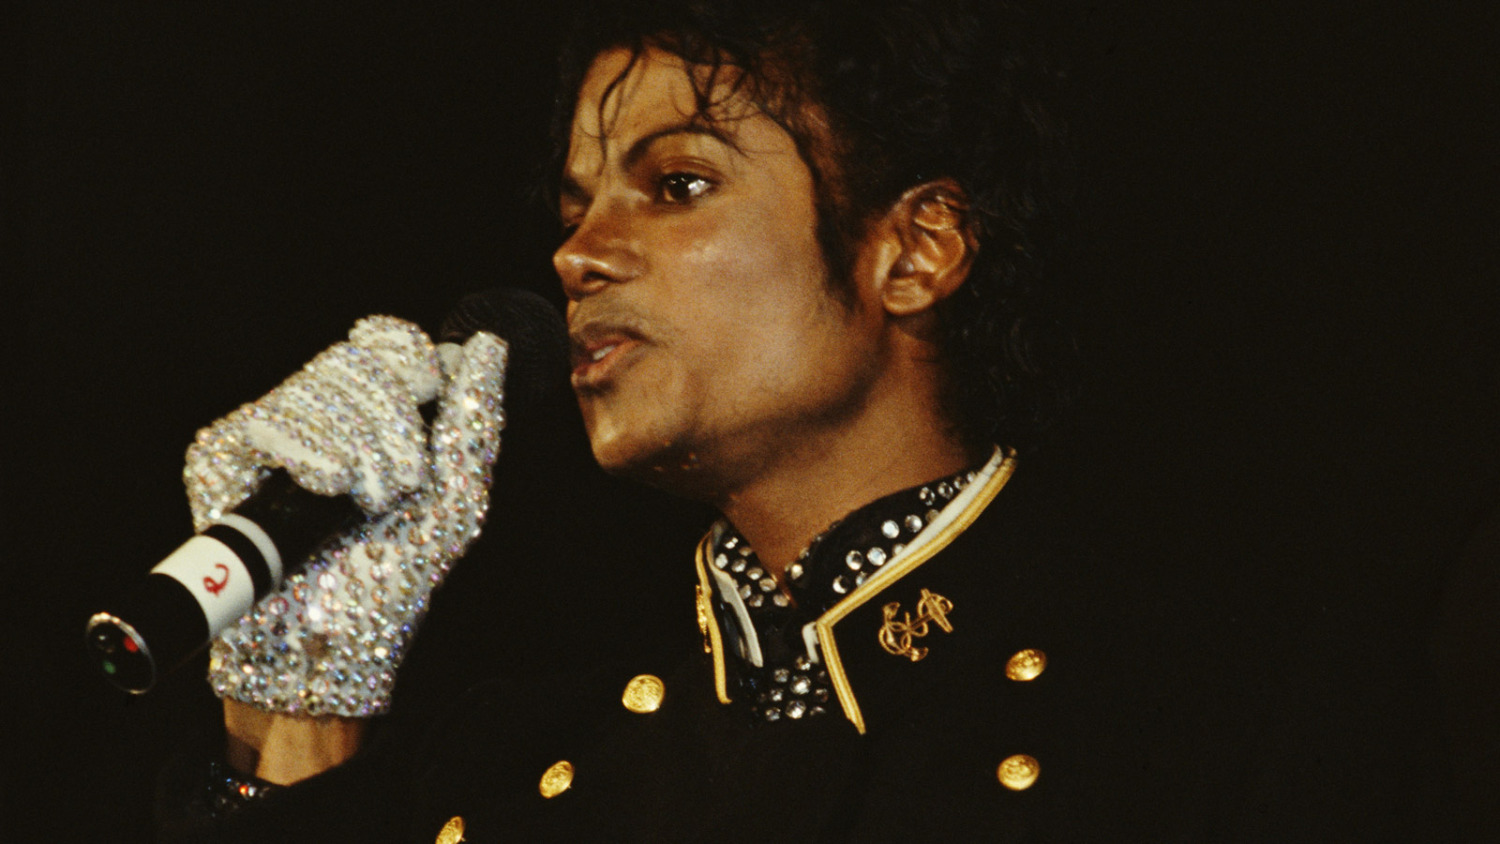 Página do documentário sobre Michael Jackson no IMDB é atacada por hackers